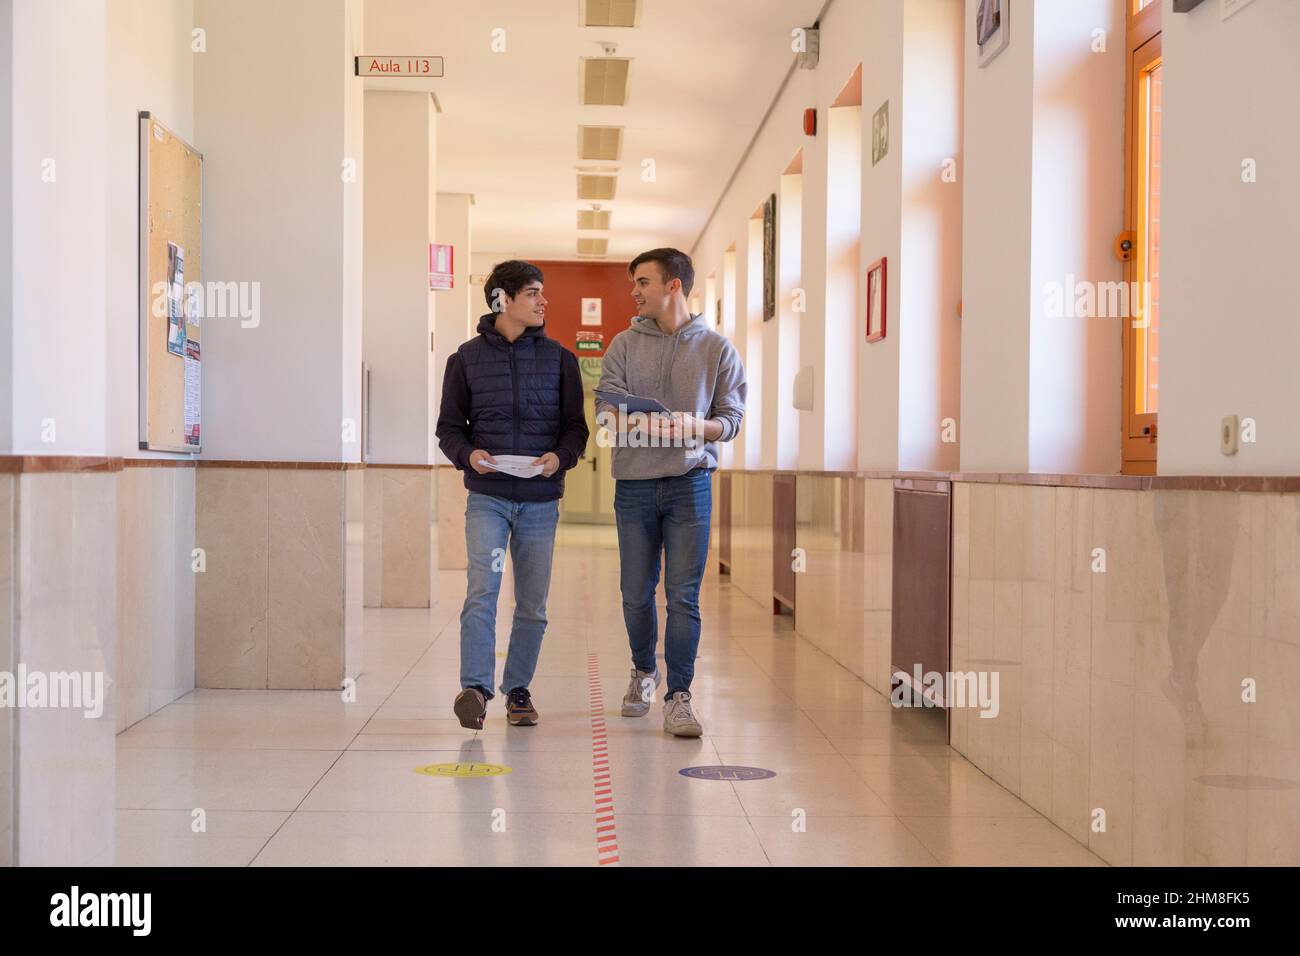 deux amis étudiants de l'université marchant dans un couloir parlant Banque D'Images